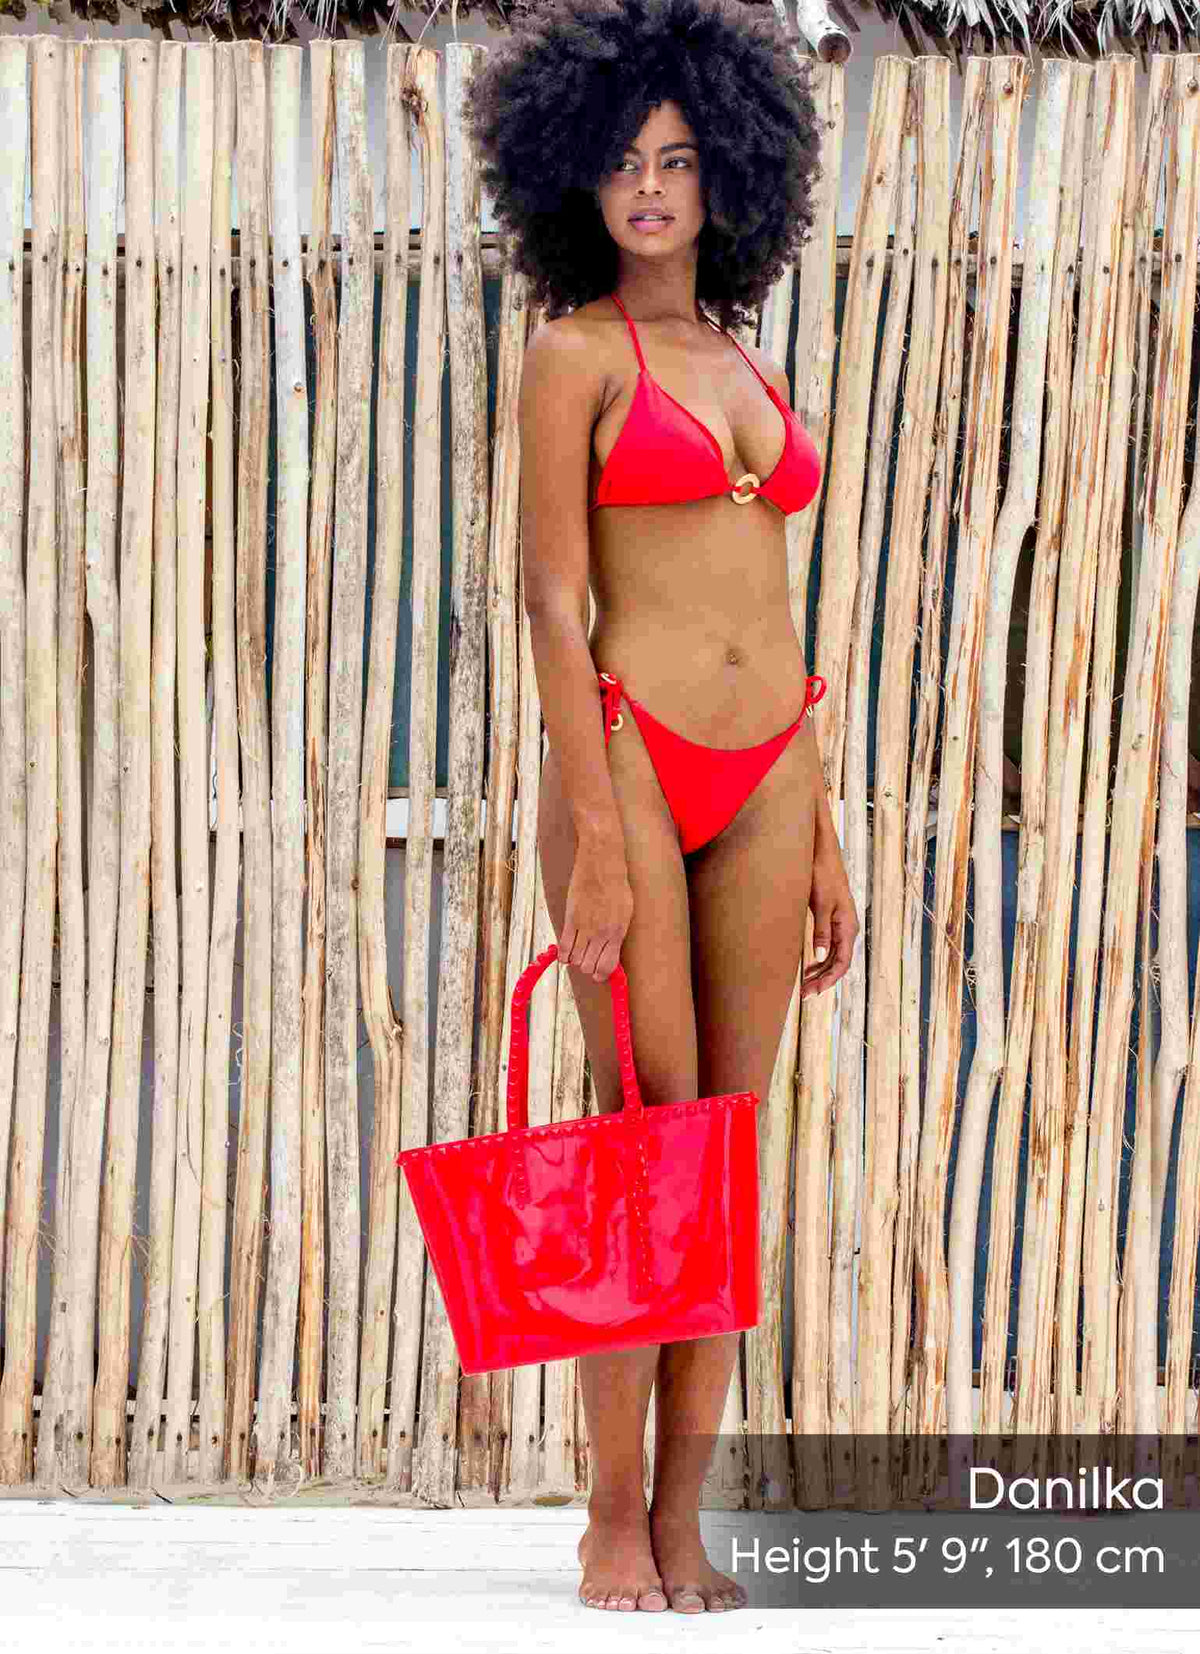 Waterproof Seba beach purse in color red